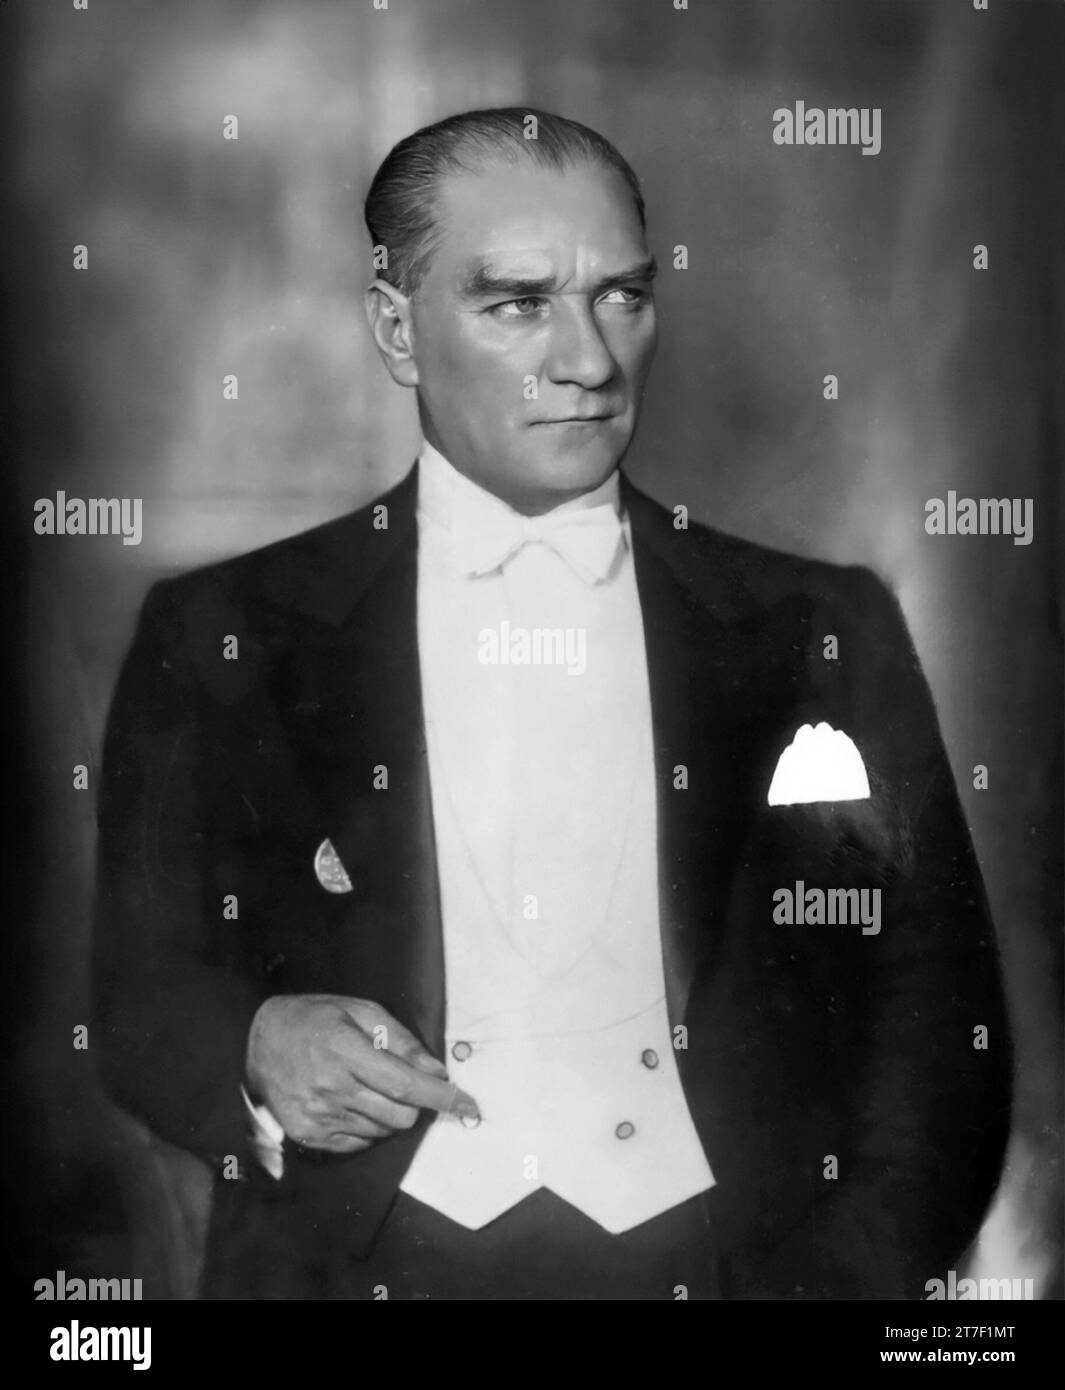 Mustafa Kemal Ataturk. Portrait de l'ancien président de la Turquie et fondateur de la République turque, Mustafa Kemal Atatürk ou Mustafa Kemal Pacha (c. 1881-1938), 1932 Banque D'Images